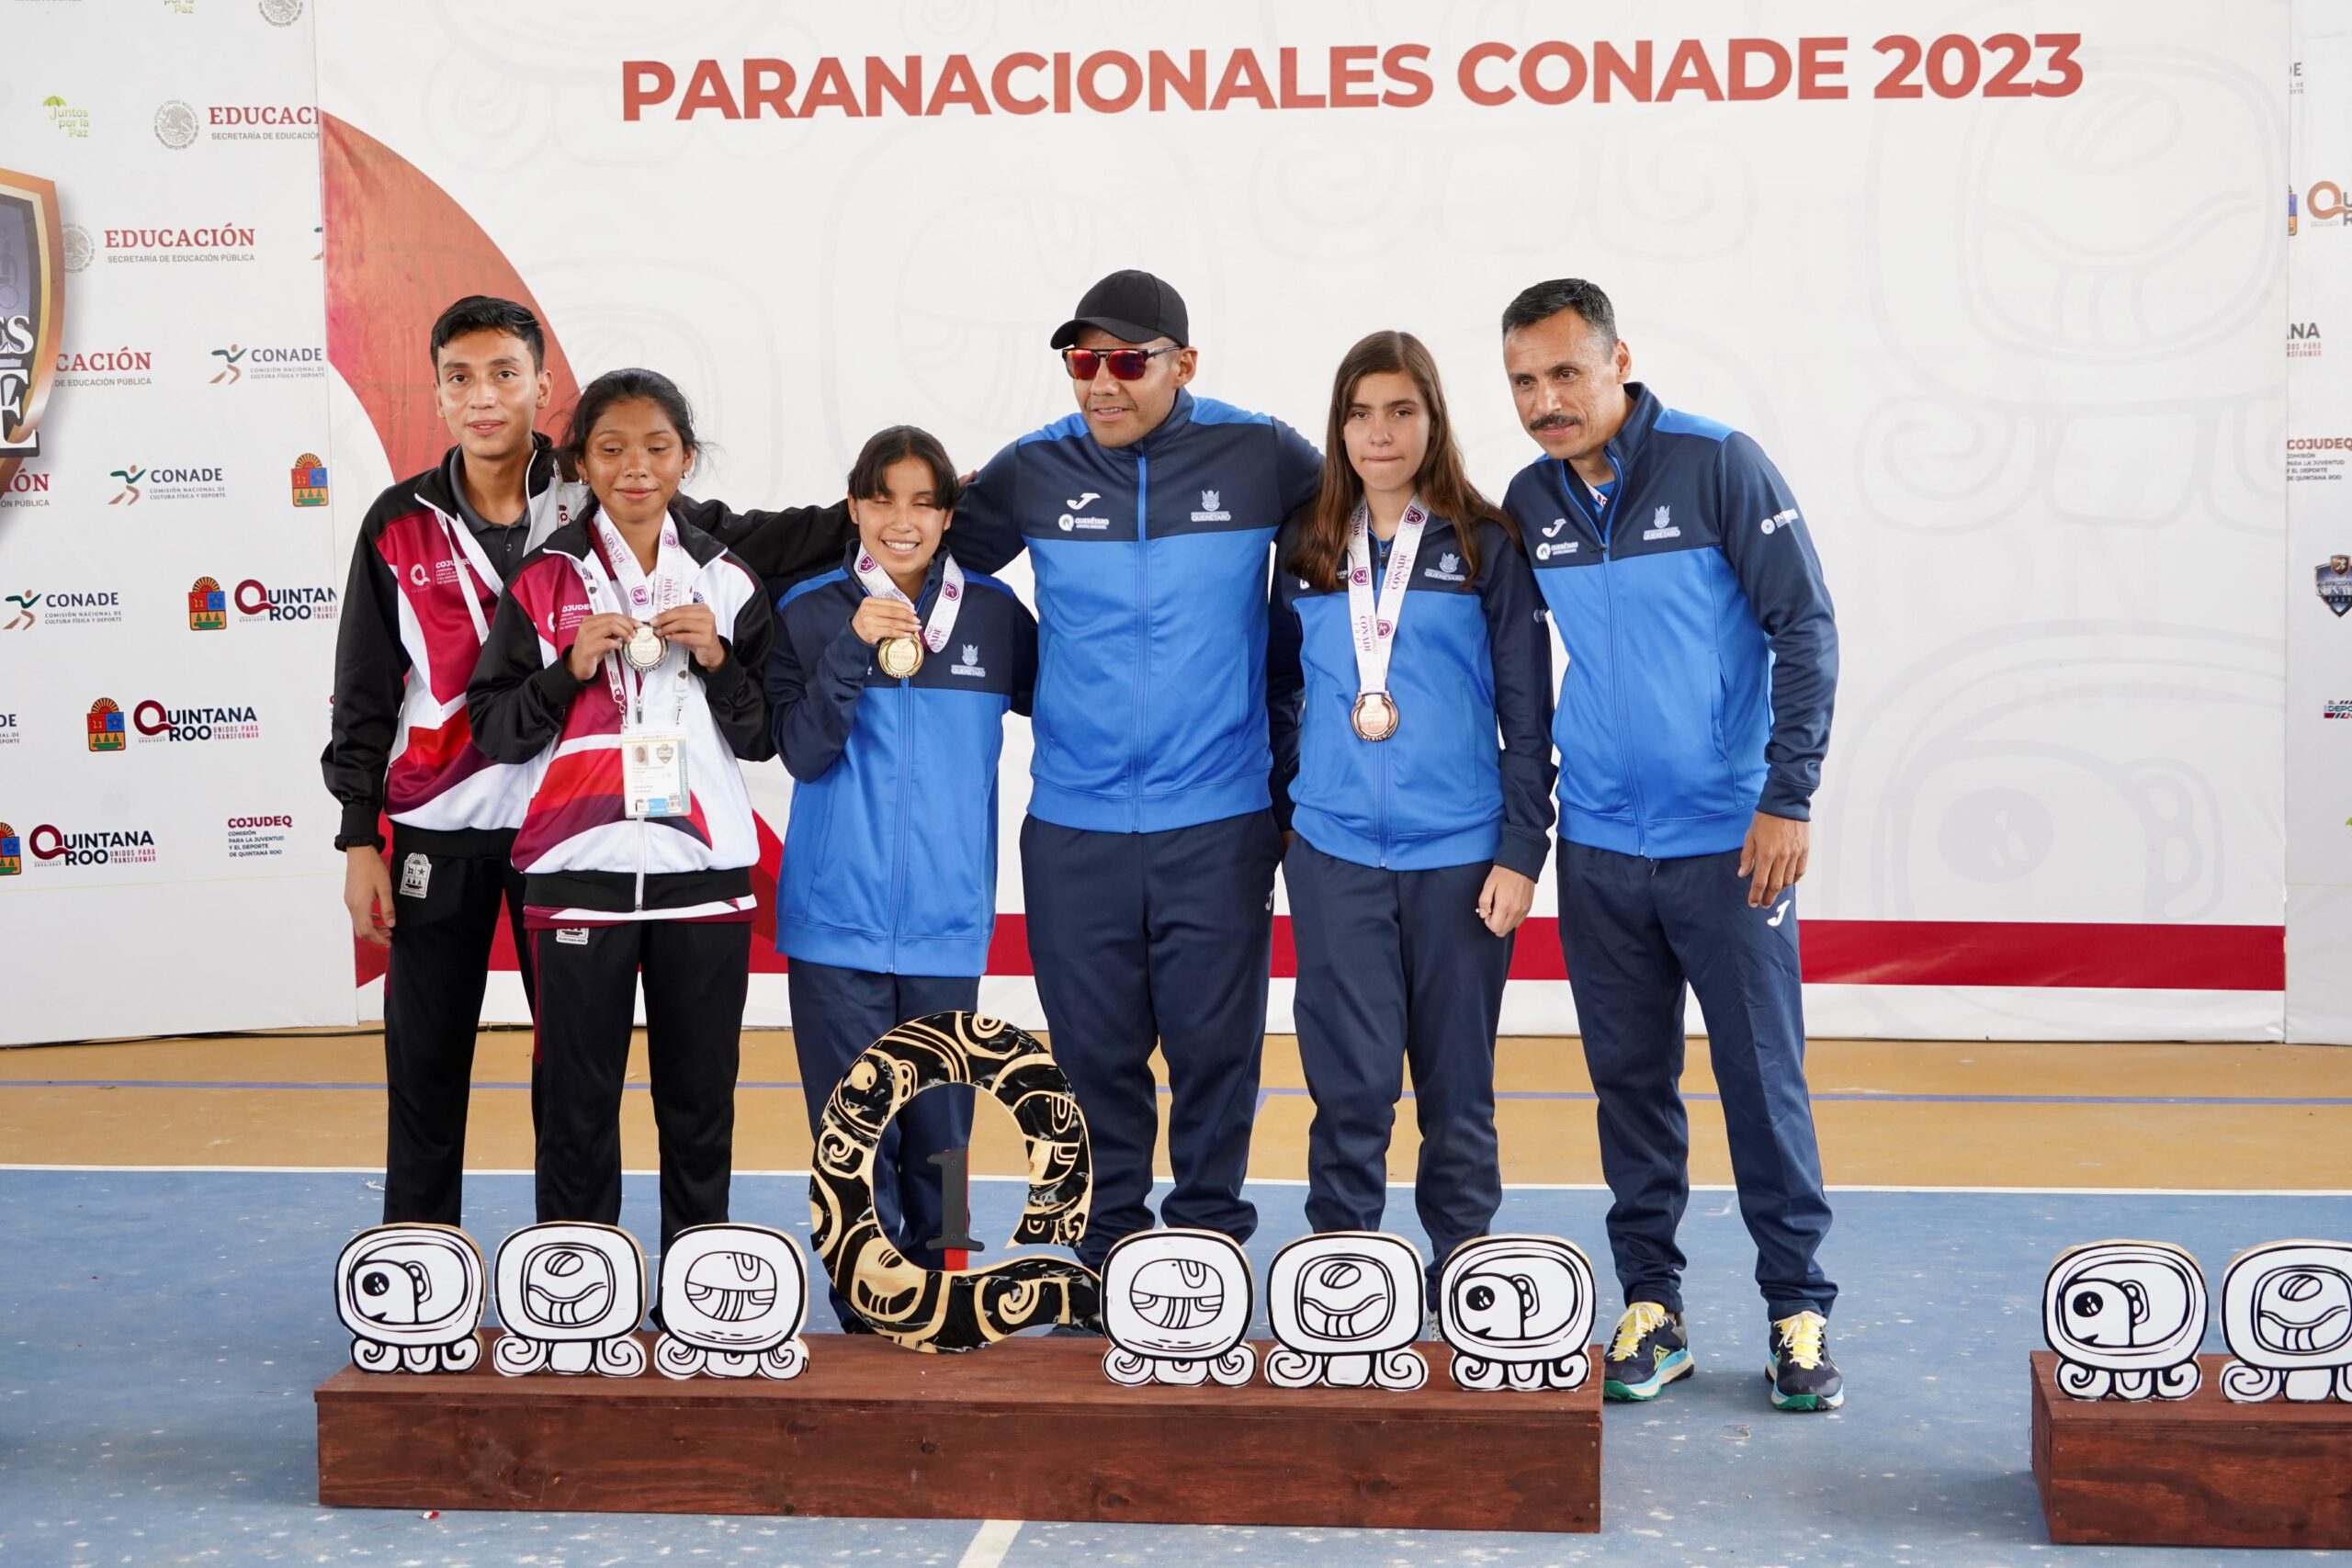 Delegación quintanarroense de paratletismo llega a las 10 medallas en los Paranacionales CONADE 2023